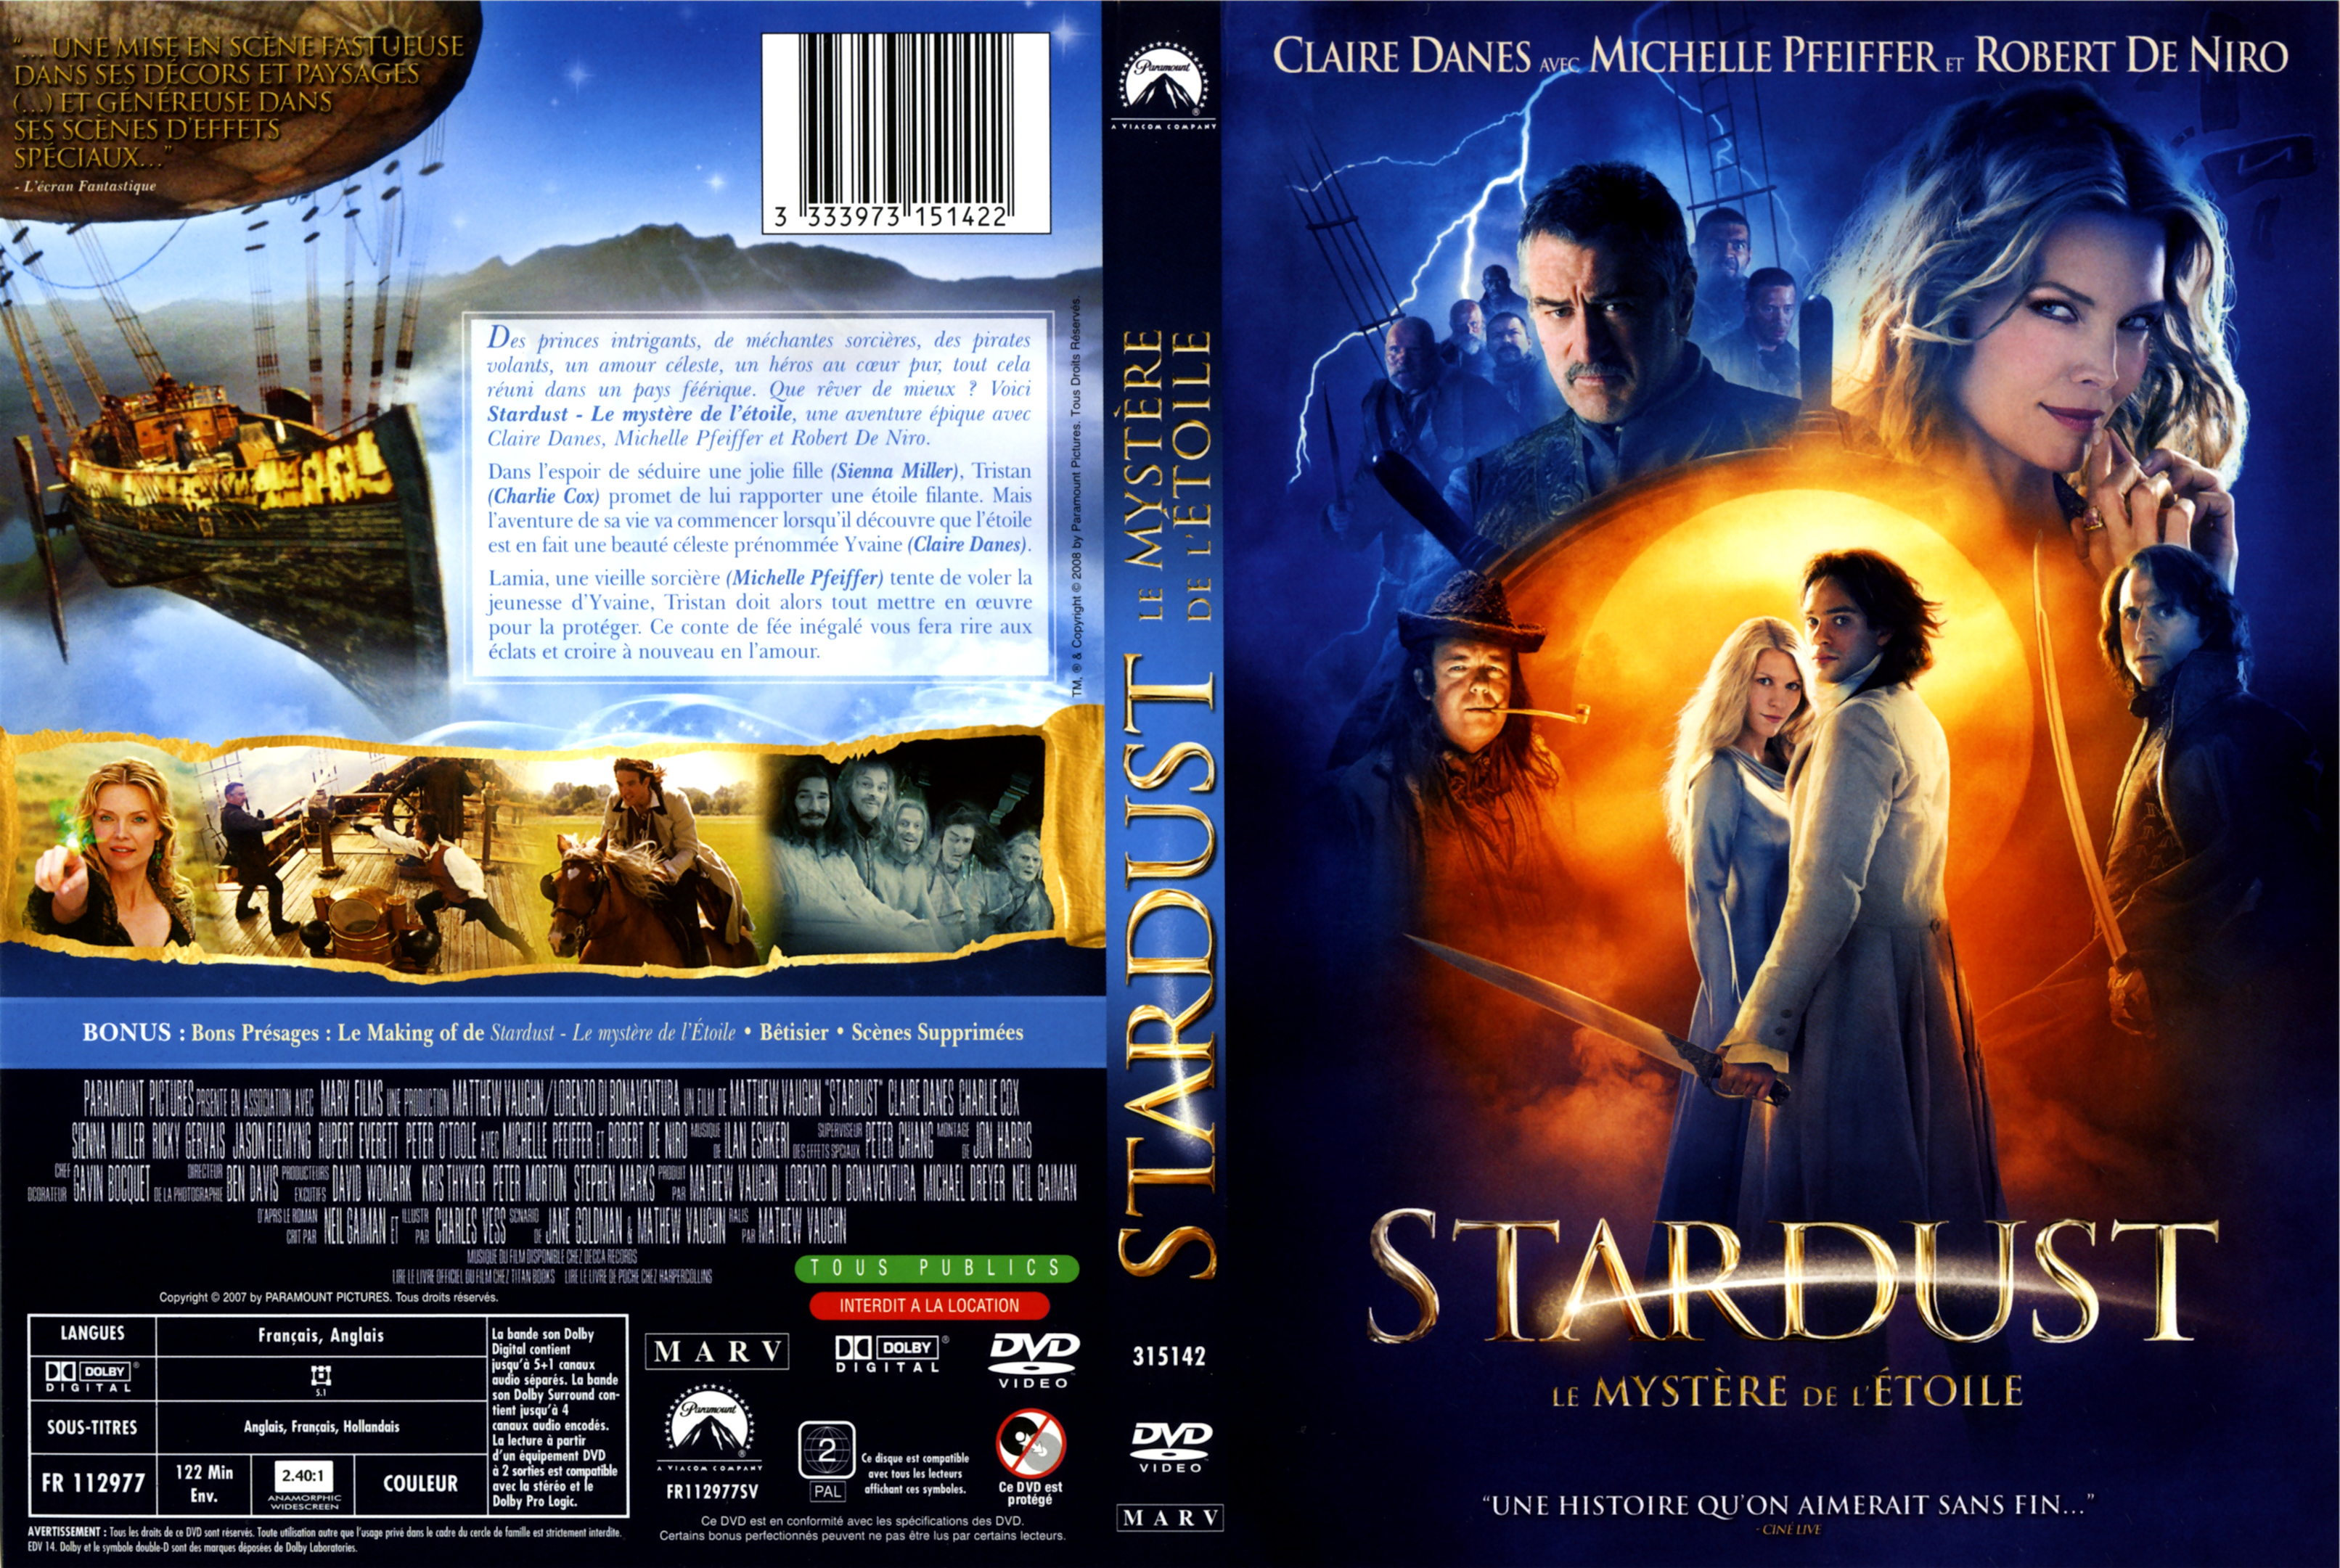 Jaquette DVD Stardust v3